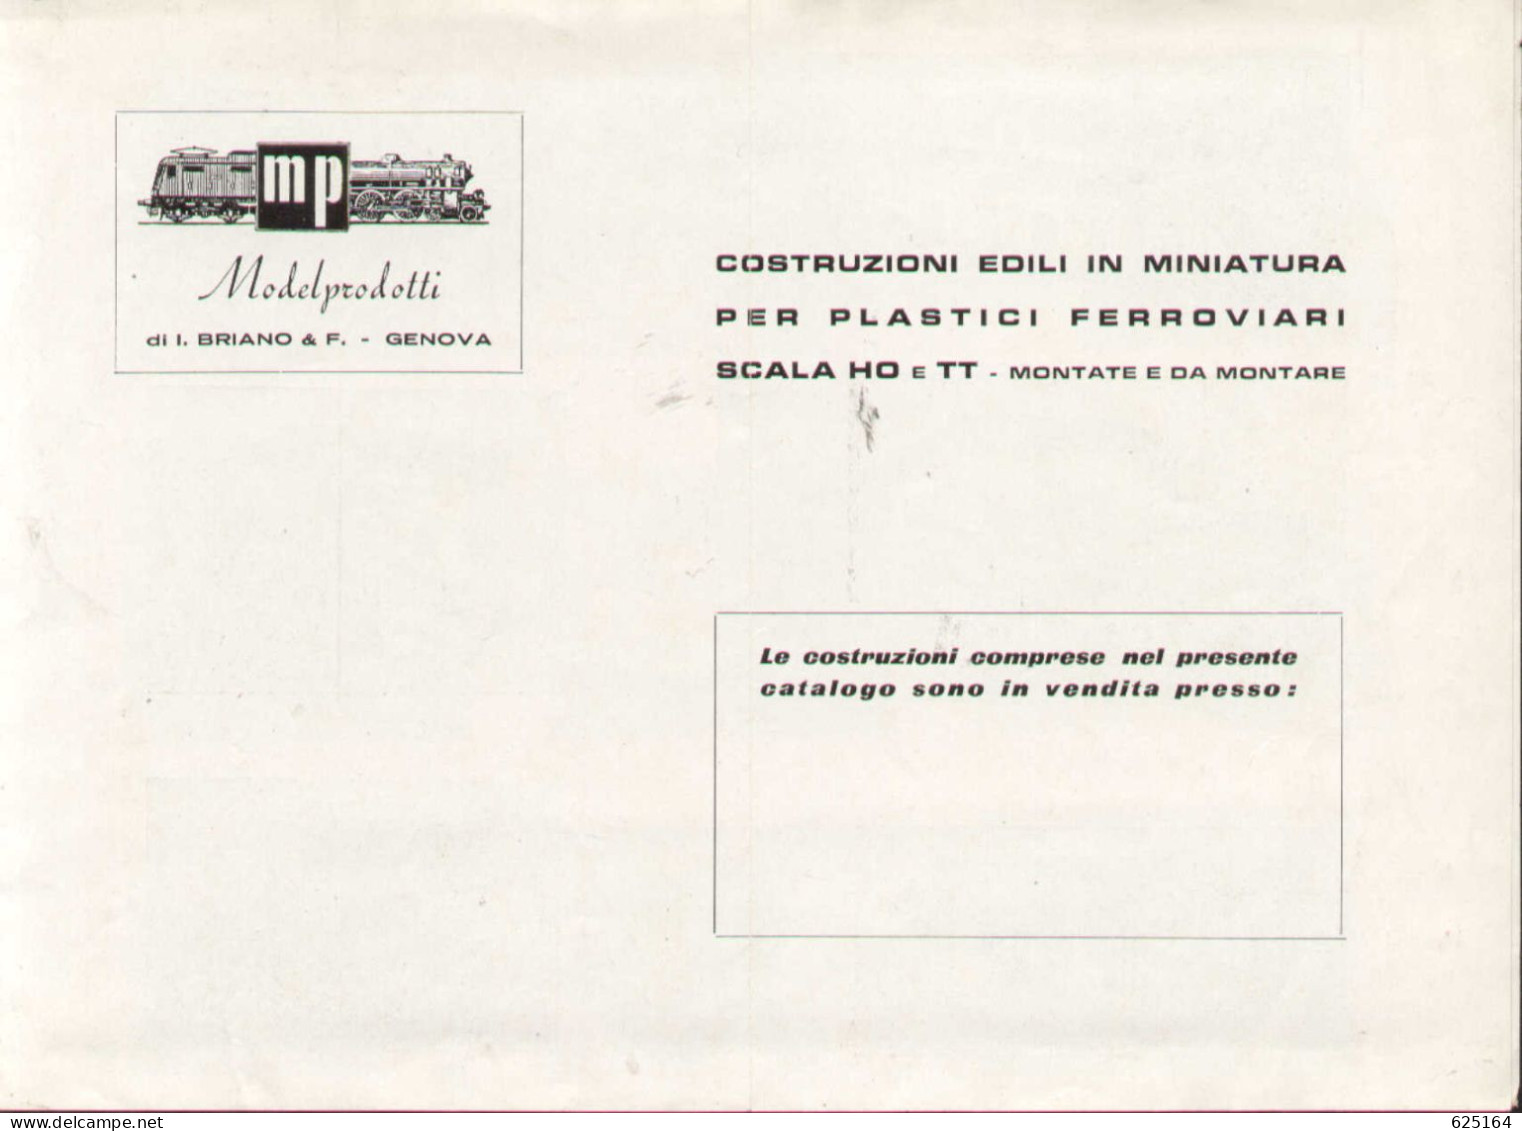 Catalogue MP ModelProdotti 1959? Ed. Italo Briano Genova Accessori HO - En Italien - Unclassified